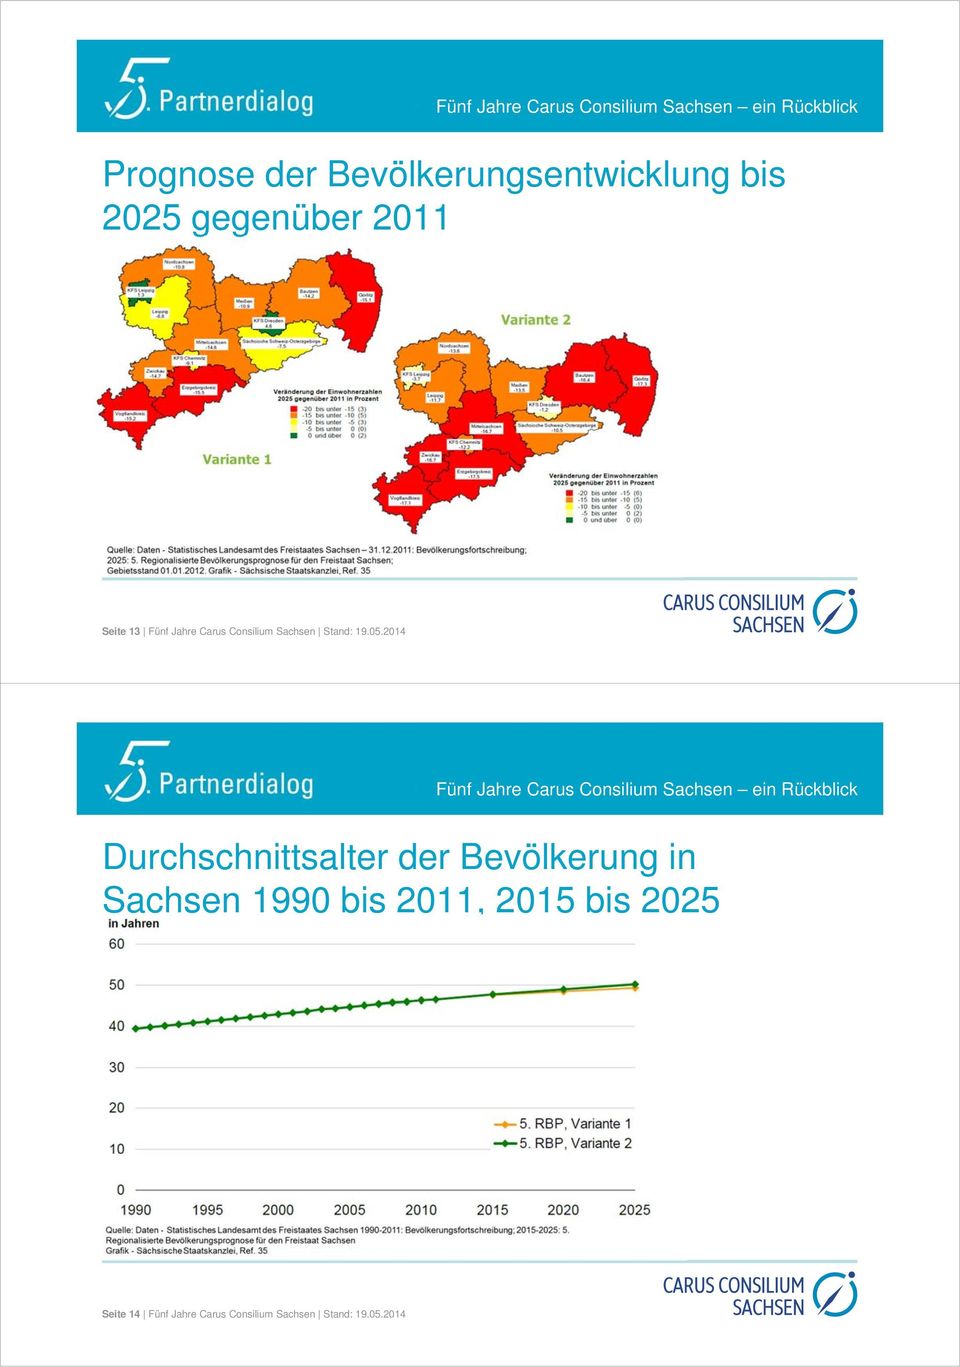 2014 Durchschnittsalter der Bevölkerung in Sachsen 1990 bis